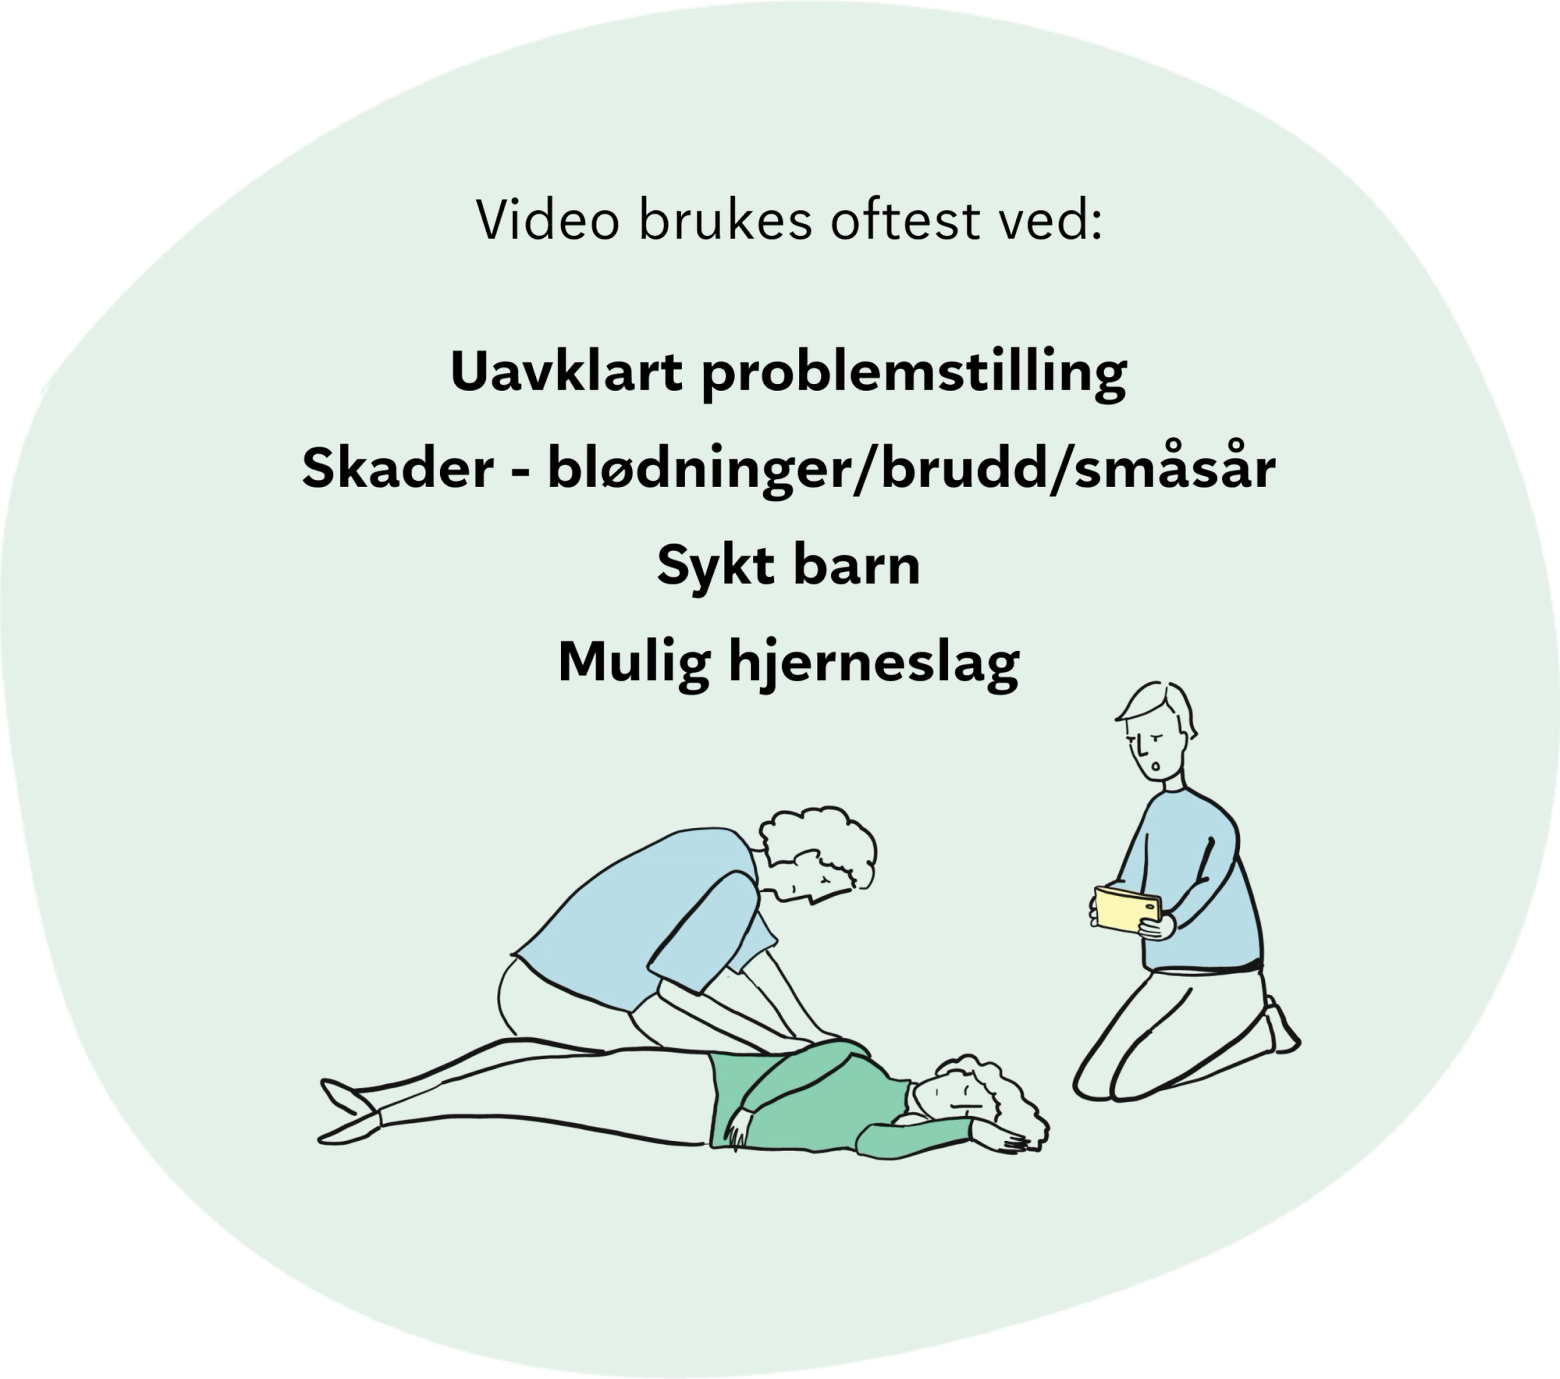 Video brukes oftest i disse situasjonene: ved uavklart problemstilling, skader som blødninger, brudd og småsår, sykt barn og mulig hjerneslag